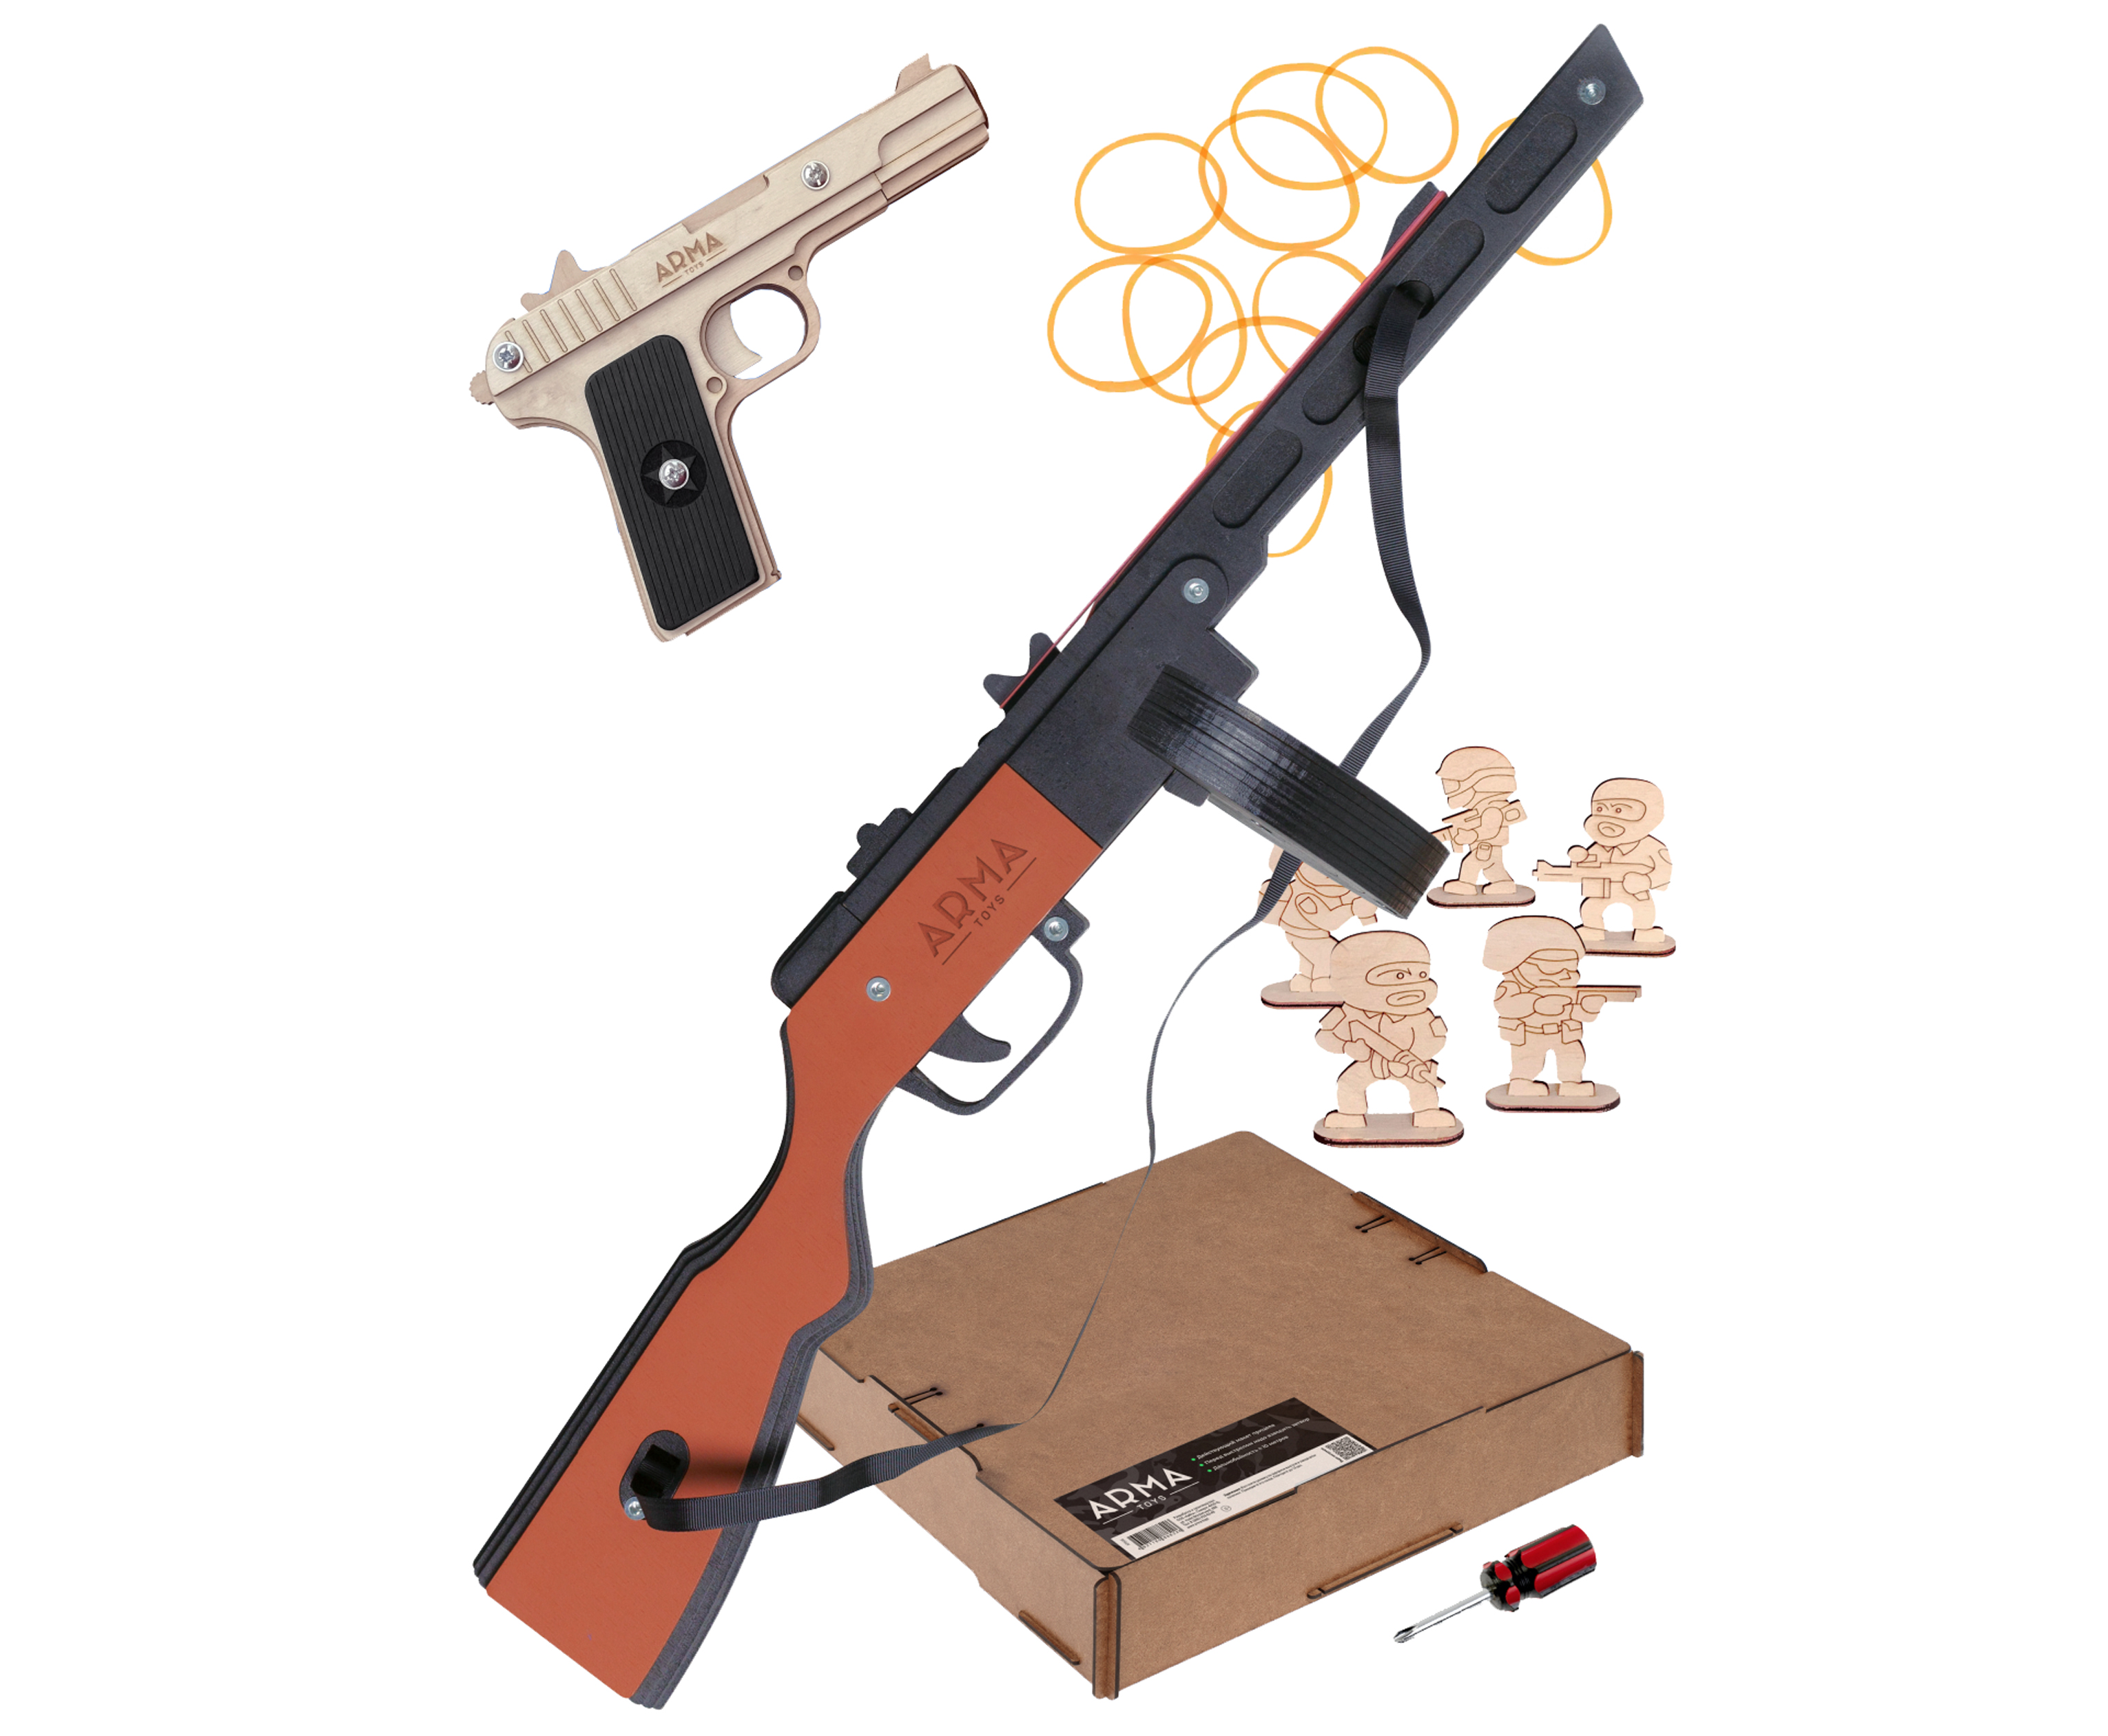 Набор игрушечных резинкострелов Arma toys Партизанский командир 2 набор игрушечных резинкострелов arma toys спецназ фбр 2 винтовка m4 пистолет глок at510